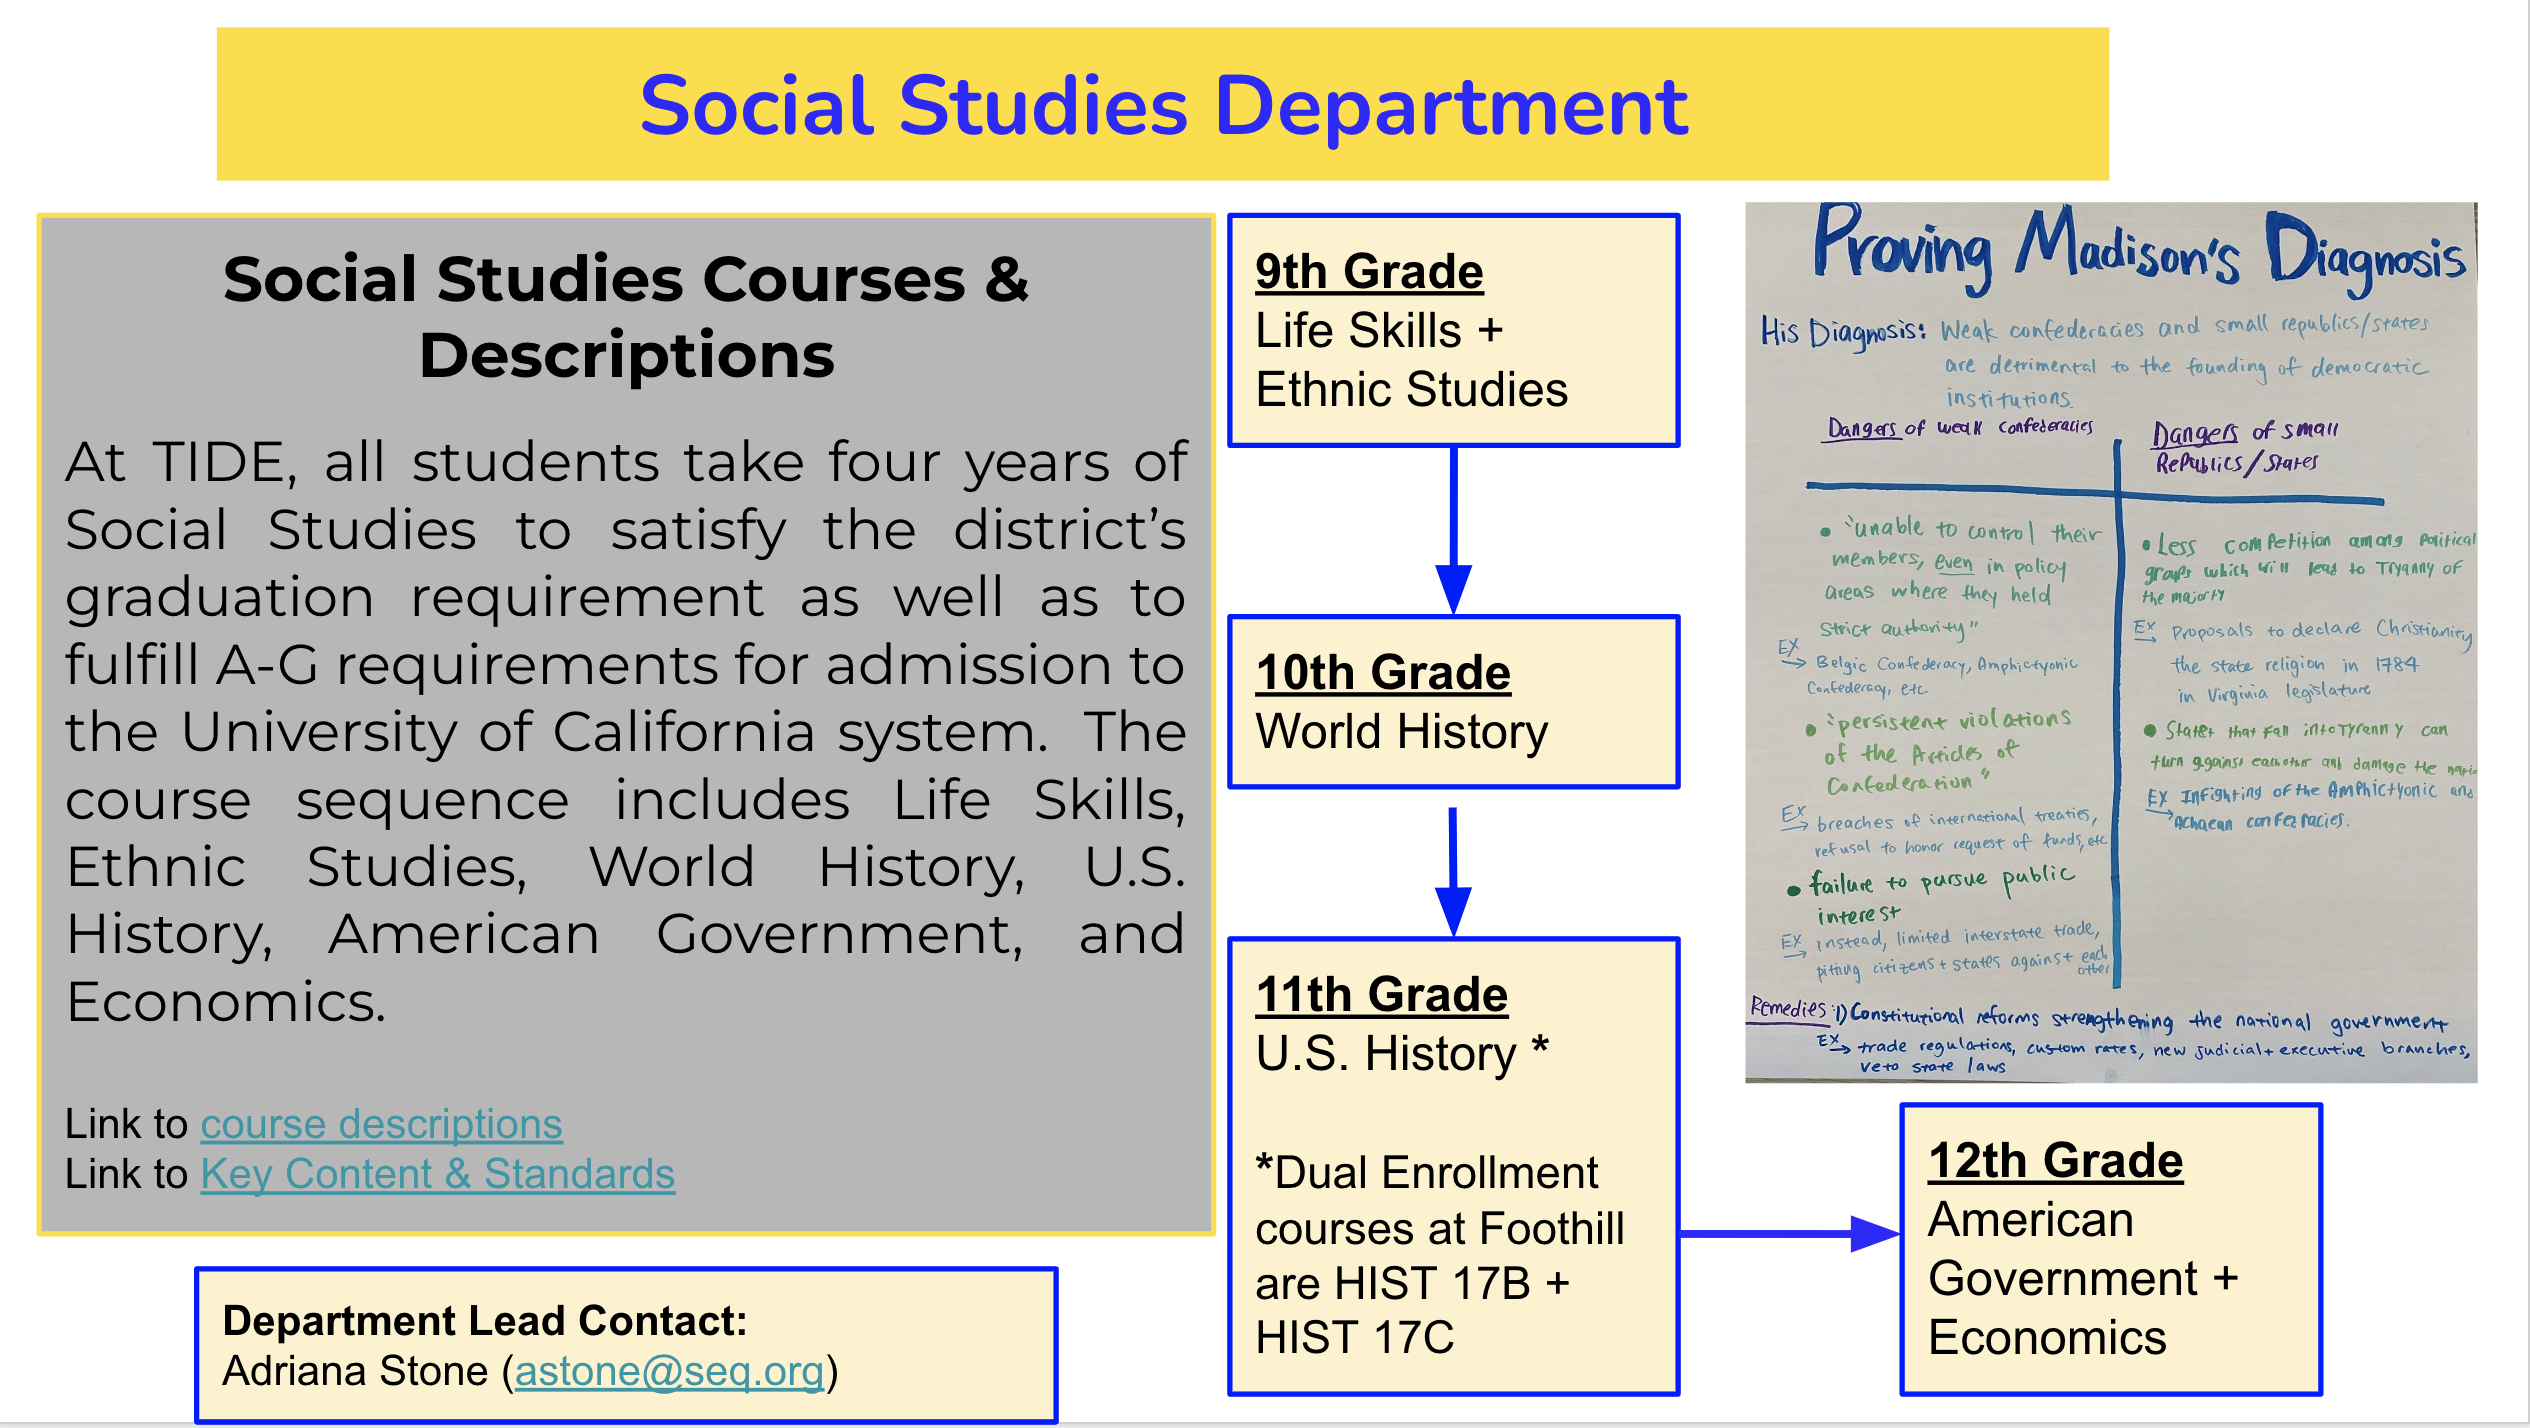 Social Studies Department